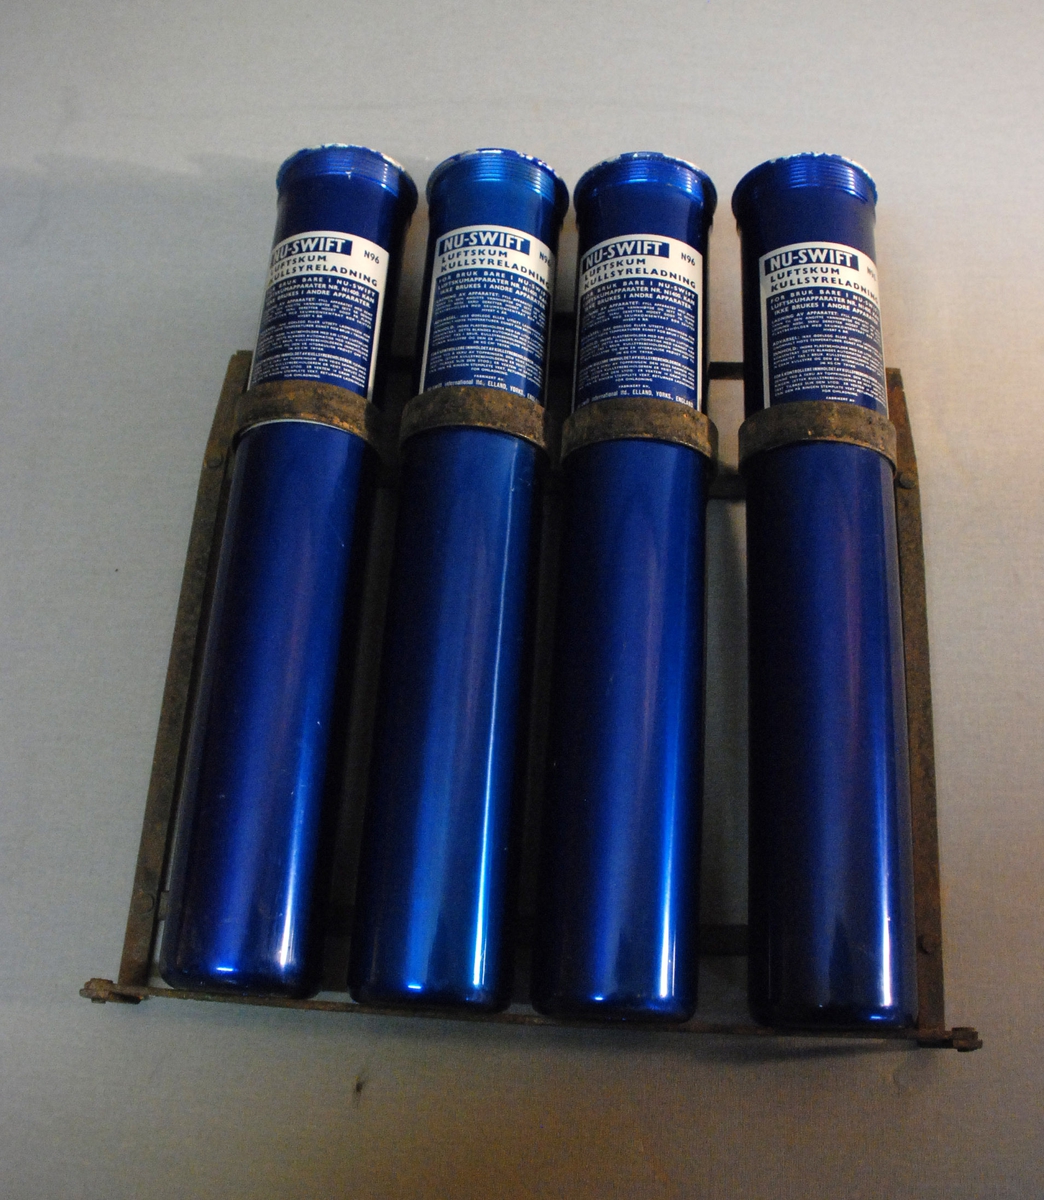 Metallstativ med fire  sylindriske patroner. Blå med hvit påtrykt tekst: Nu-swift Luftskum kullsyreladning M 96